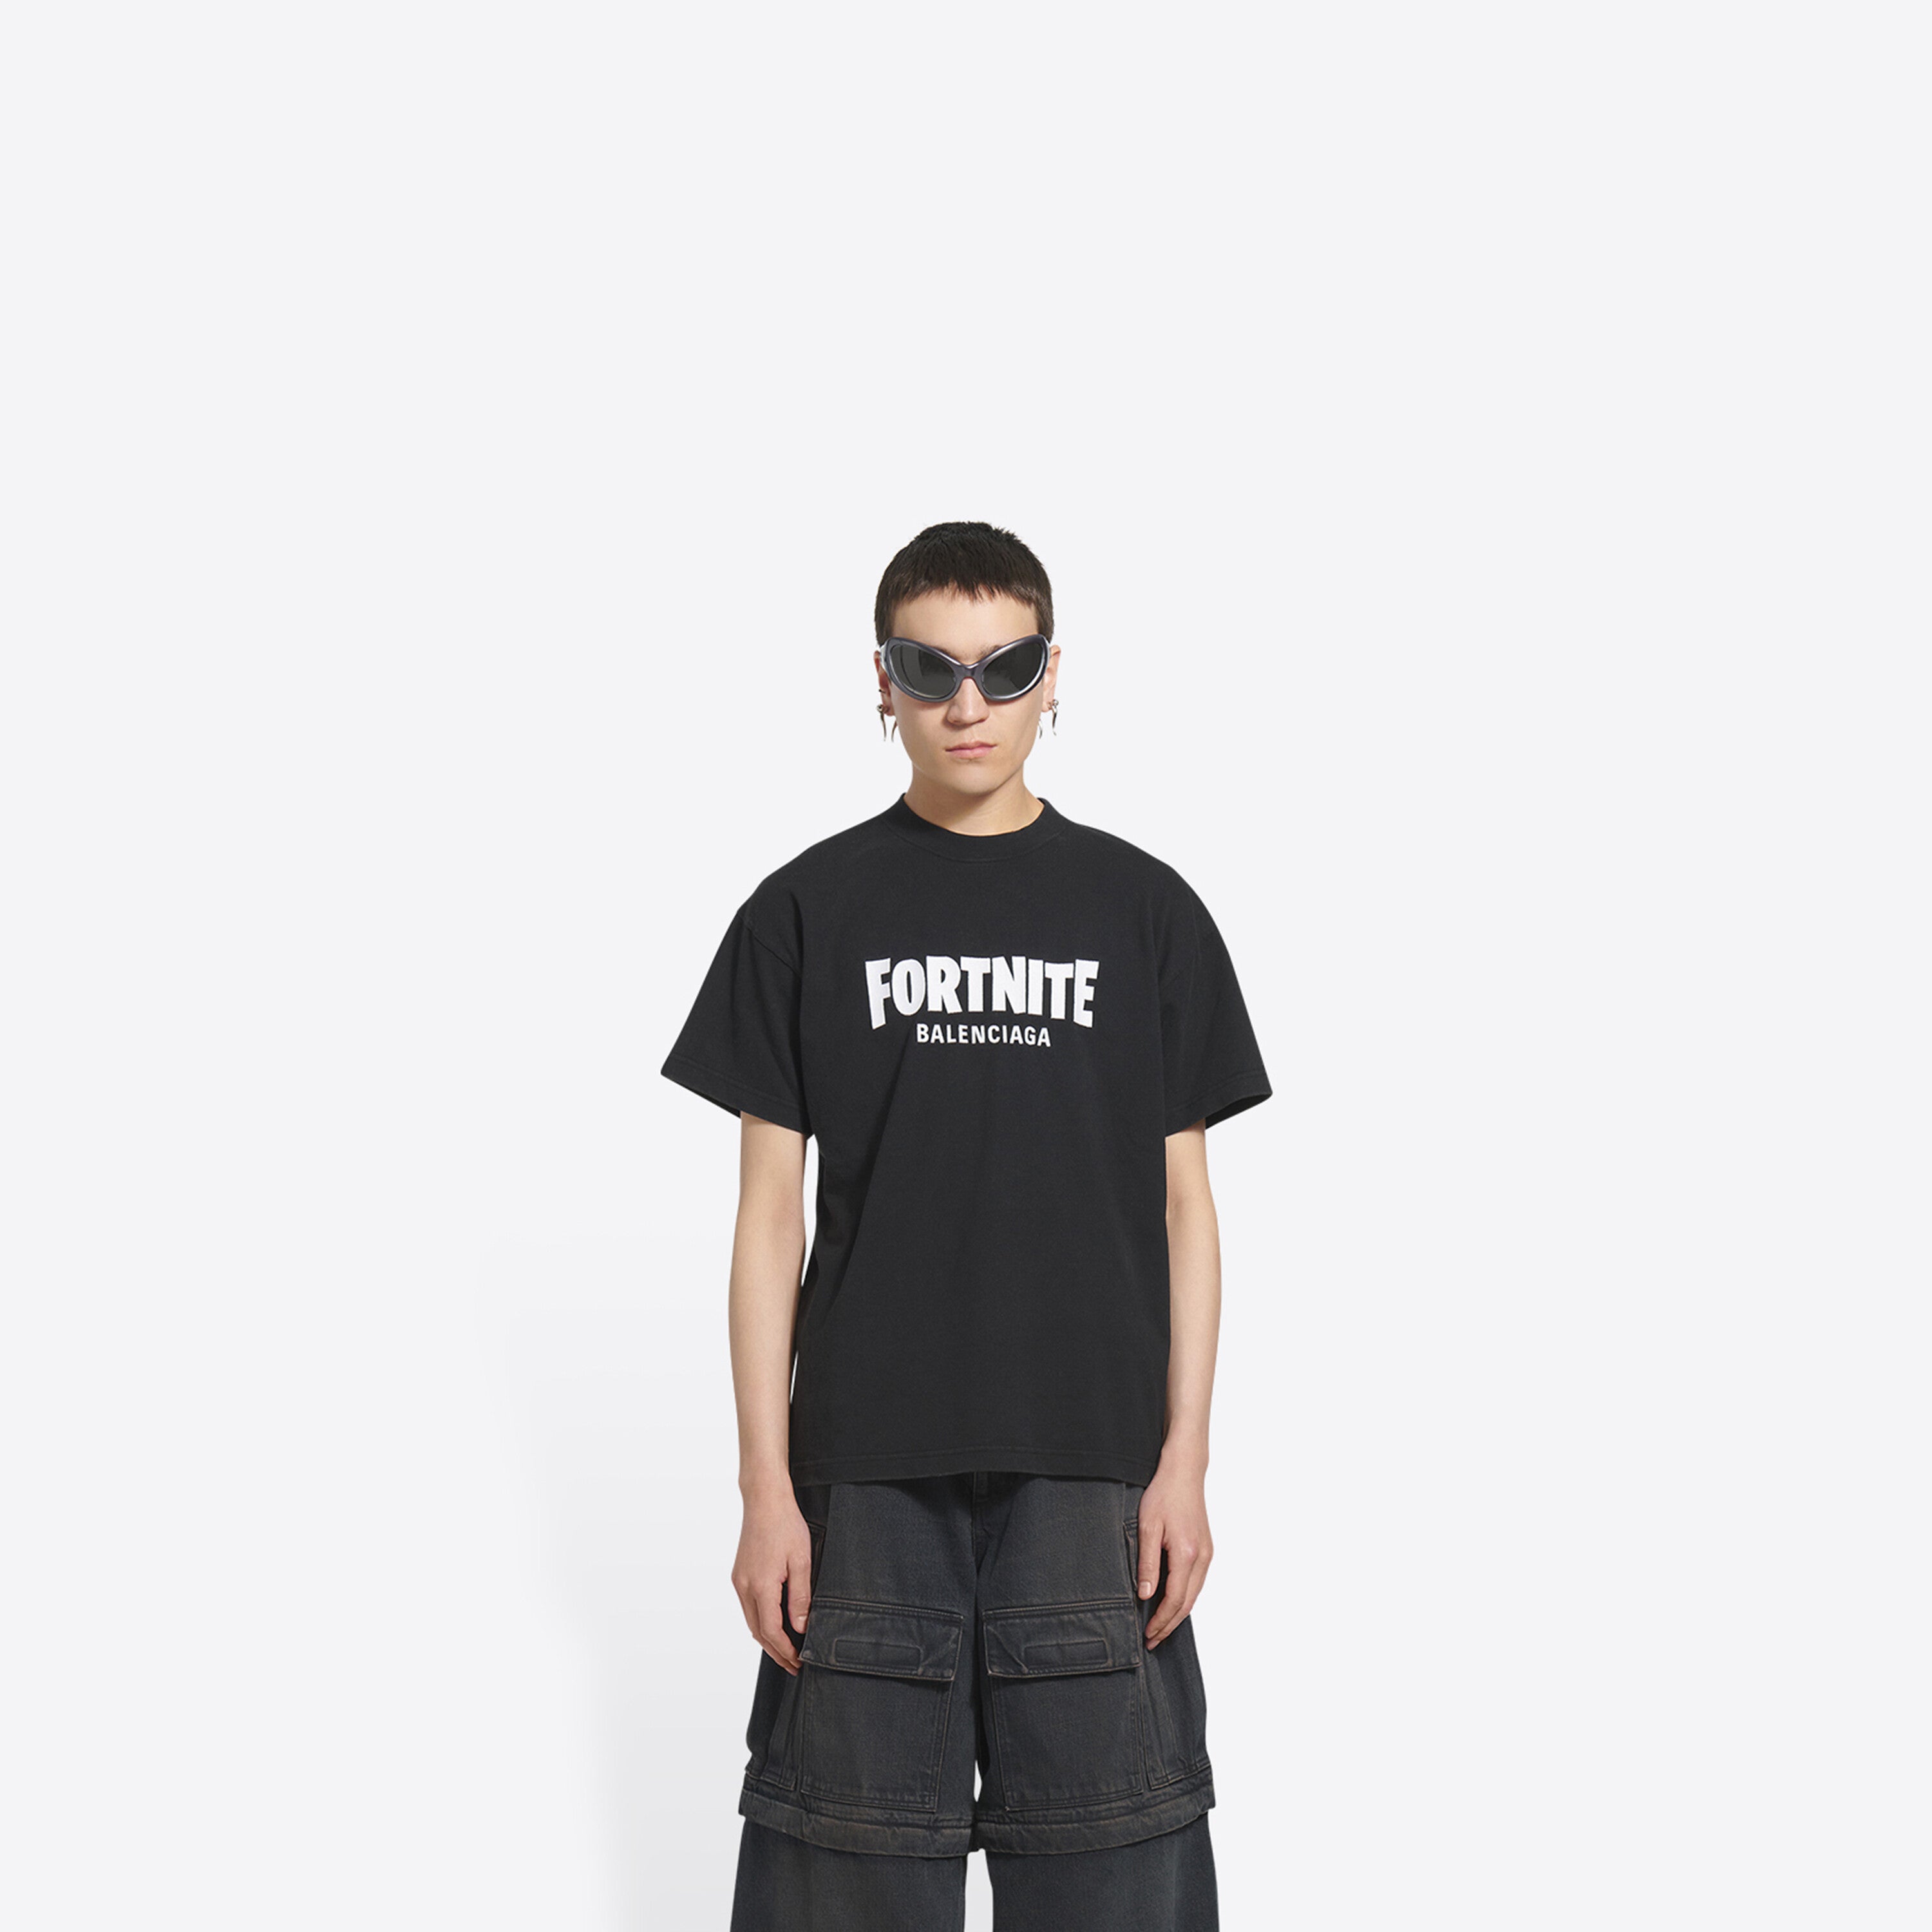 Fortnite Balenciaga Tshirt  Trend T Shirt Store Online